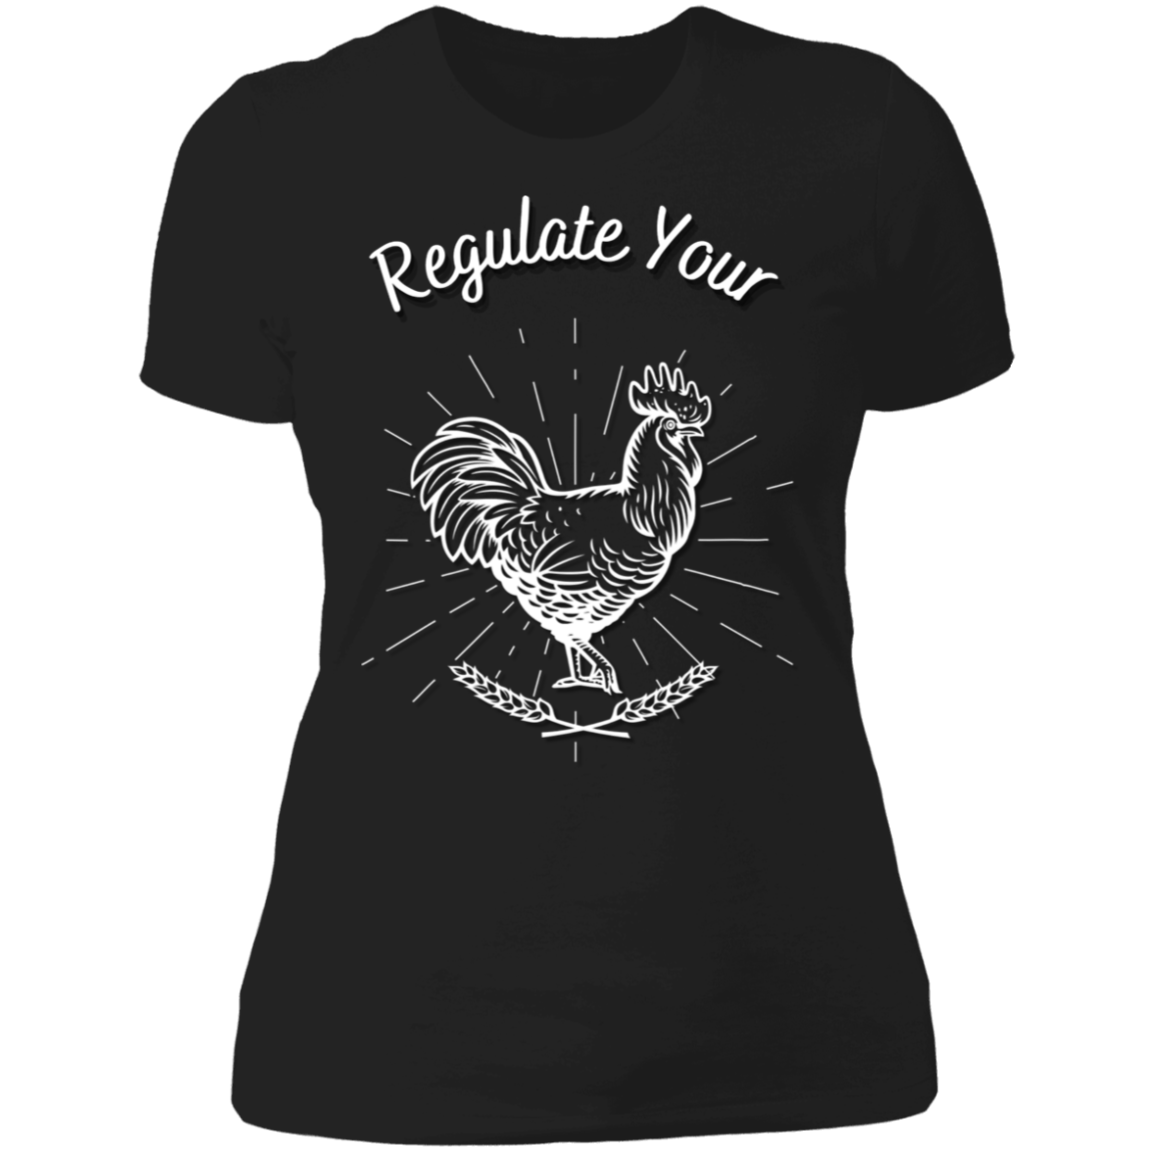 Regulate Your C**k - Ladies' Boyfriend T-Shirt